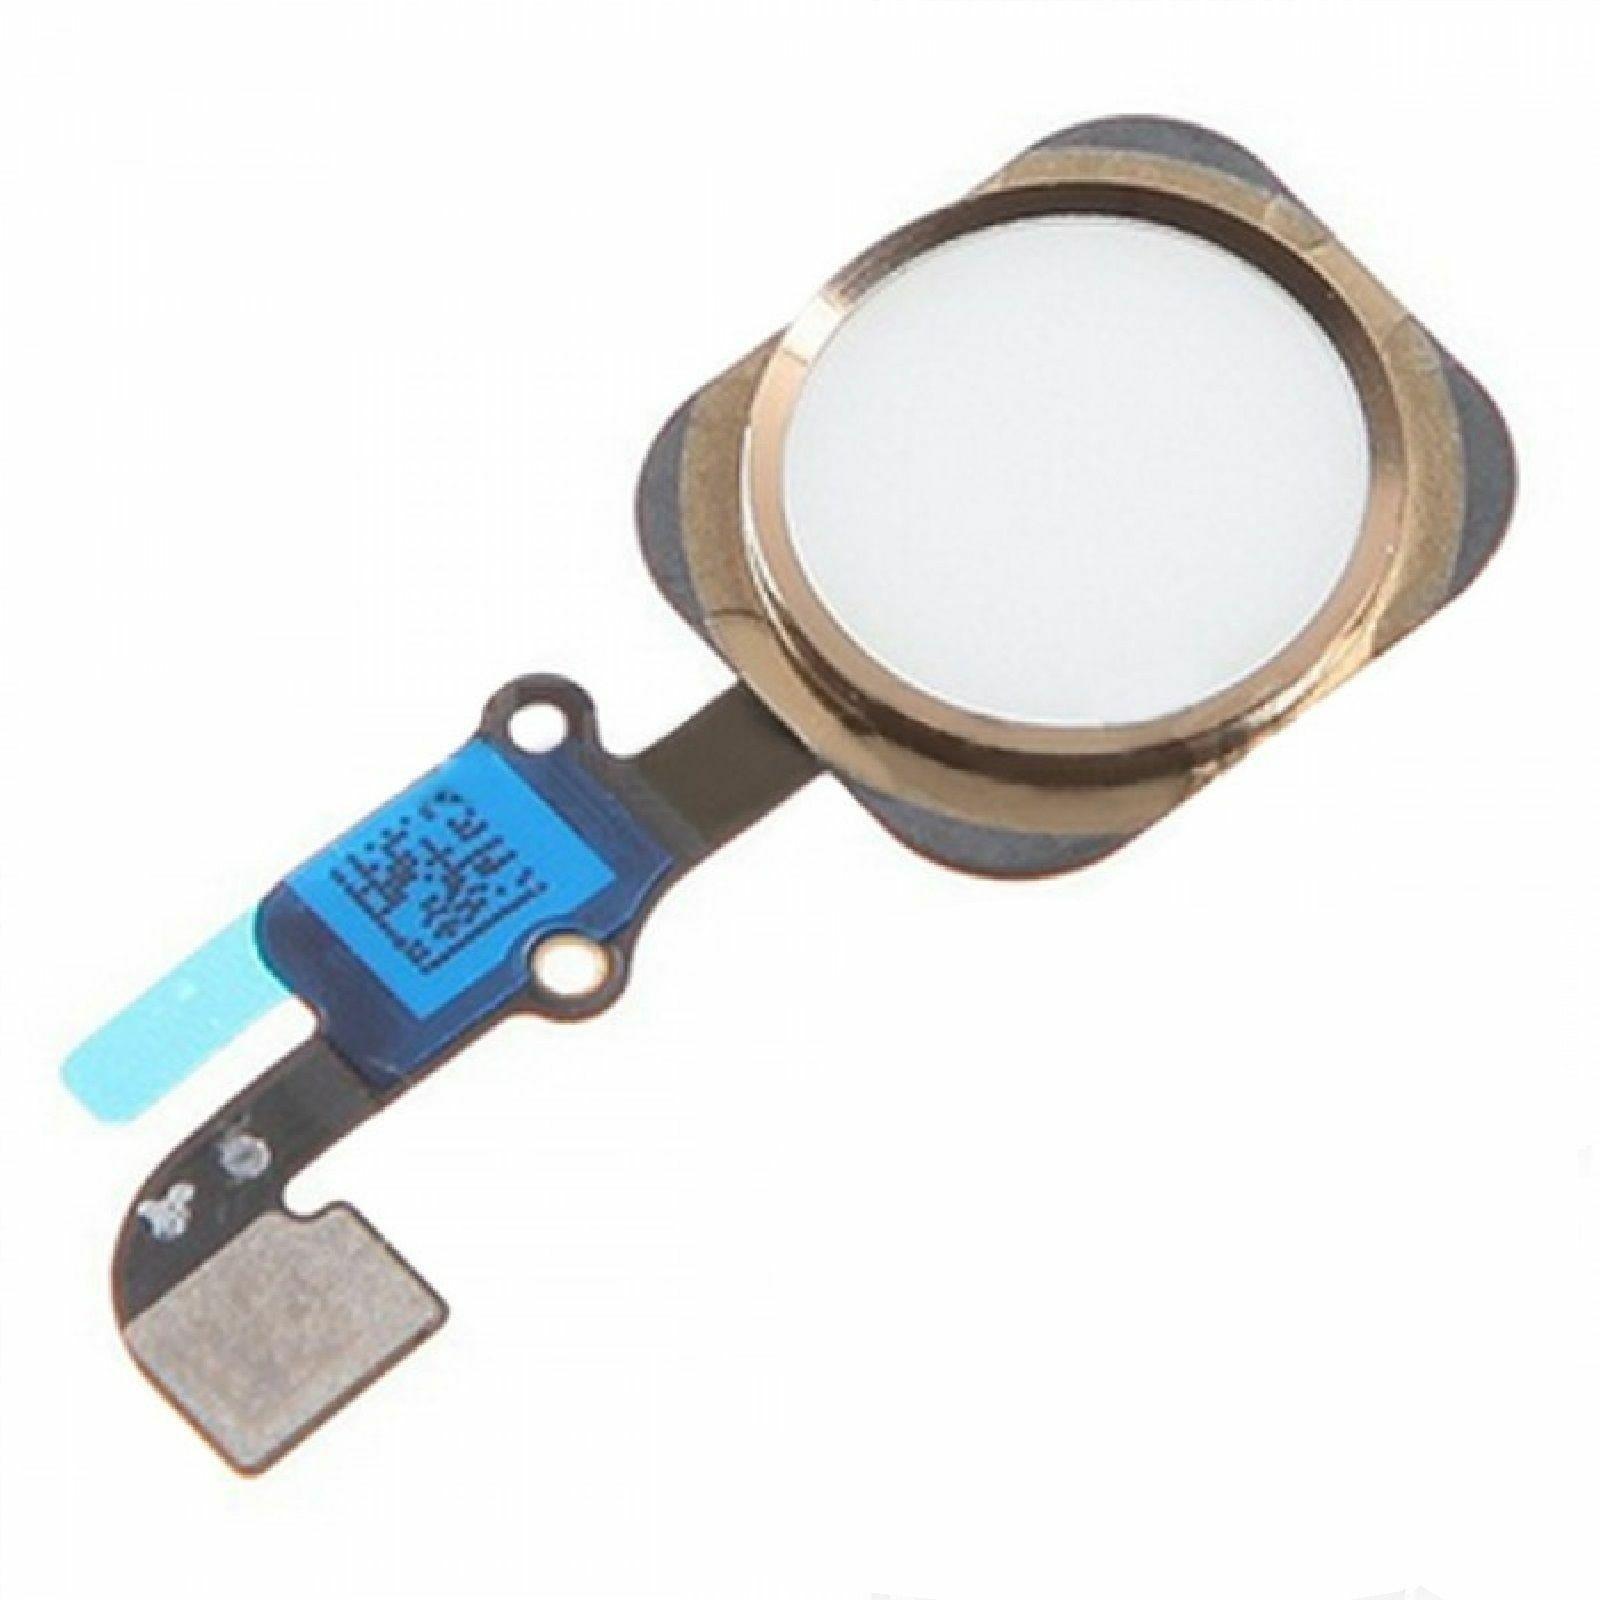 Изображение товара: Запасные части Кнопка Домой сенсорный ID Датчик Ключ гибкий кабель для iPhone 6S plus